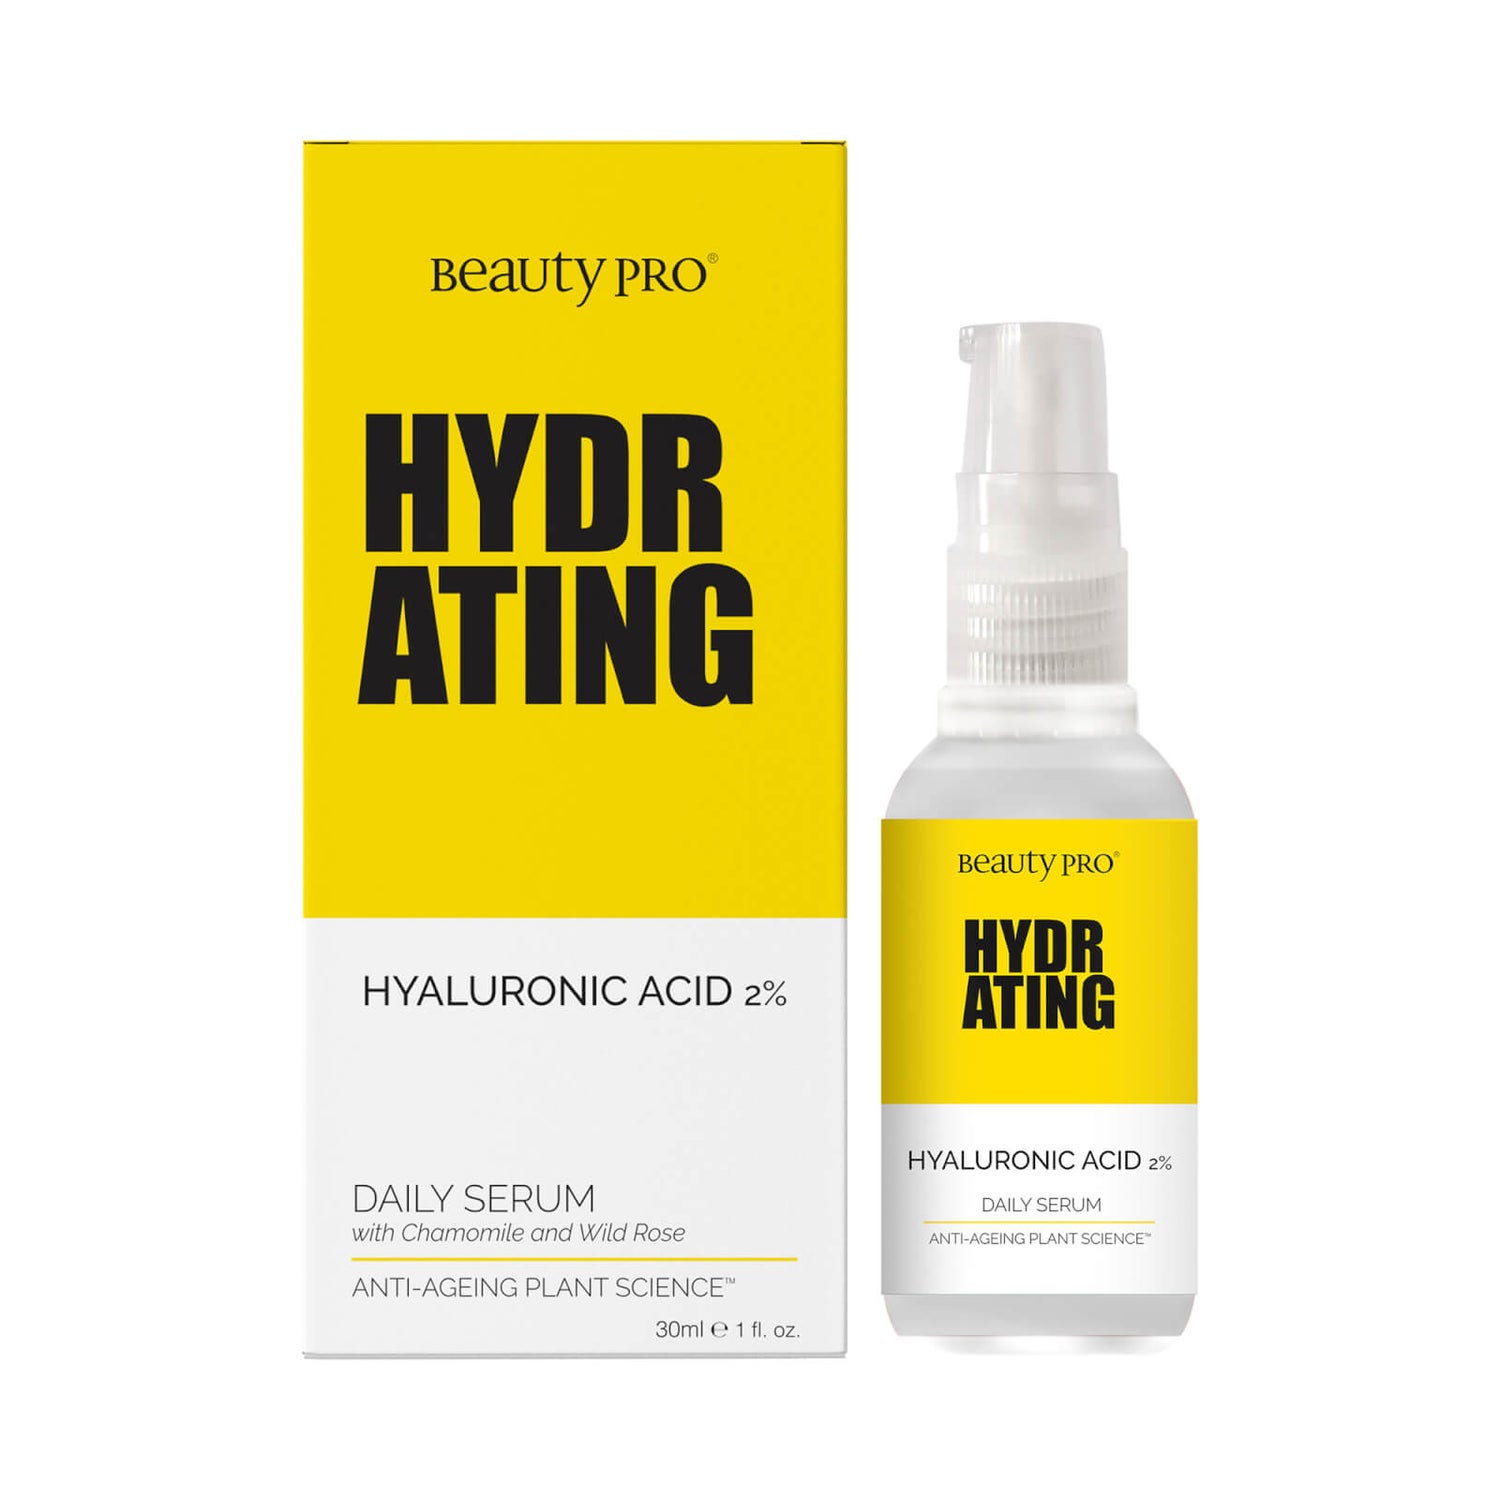 BeautyPro Suero diario hidratante de ácido hialurónico al 1% 30ml